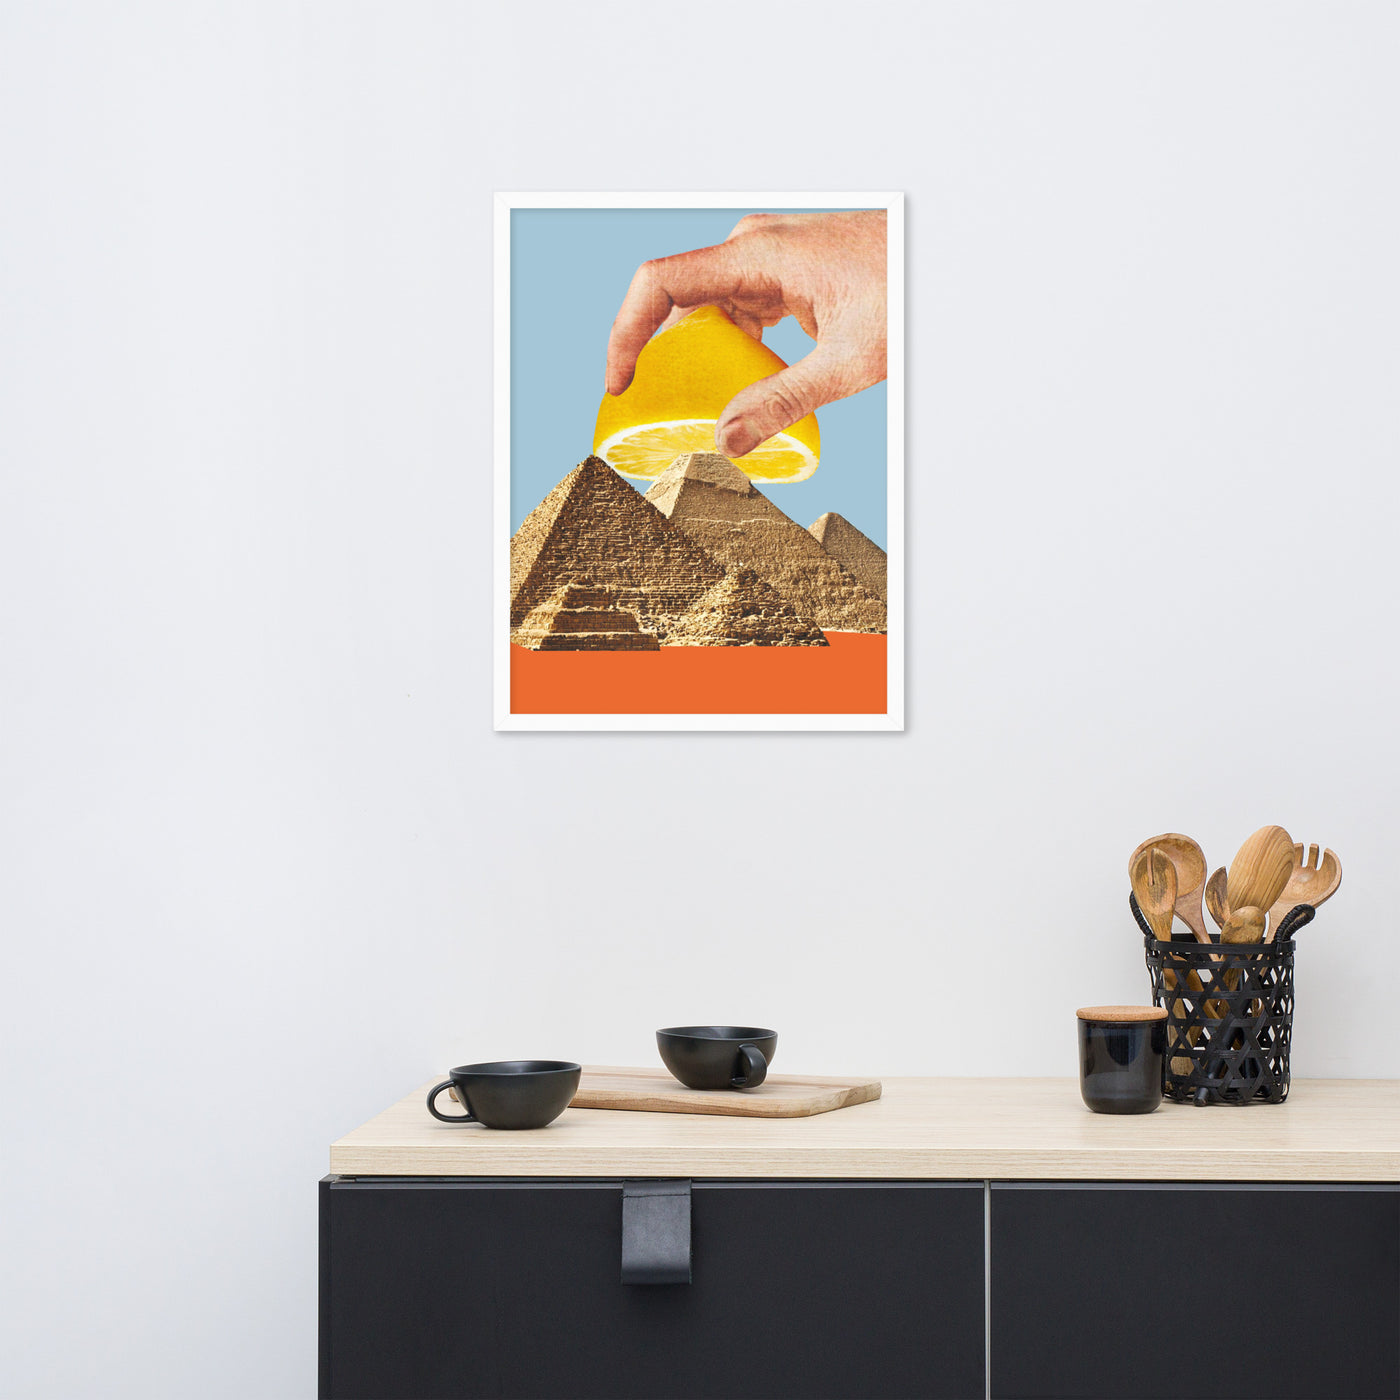 Gerahmtes Bild Kollektion "Kitchen Art" - Zitronen Pyramide